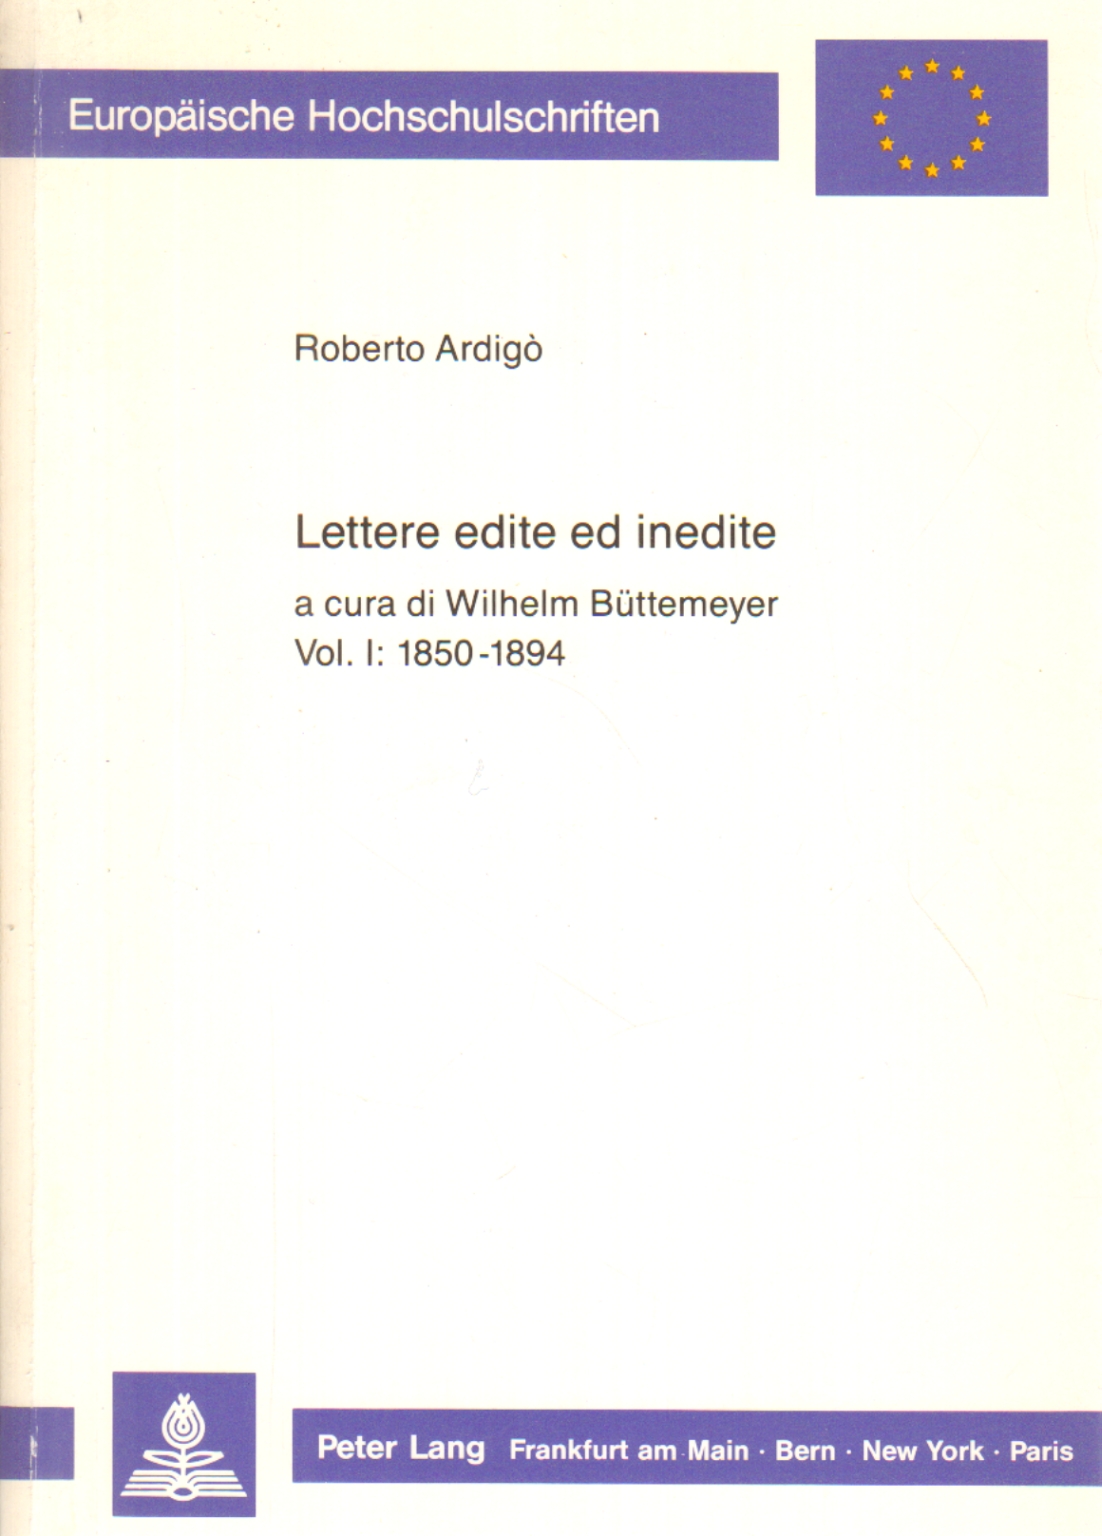 Lettere edite ed inedite vol. I 1850-1894, Roberto Ardigò